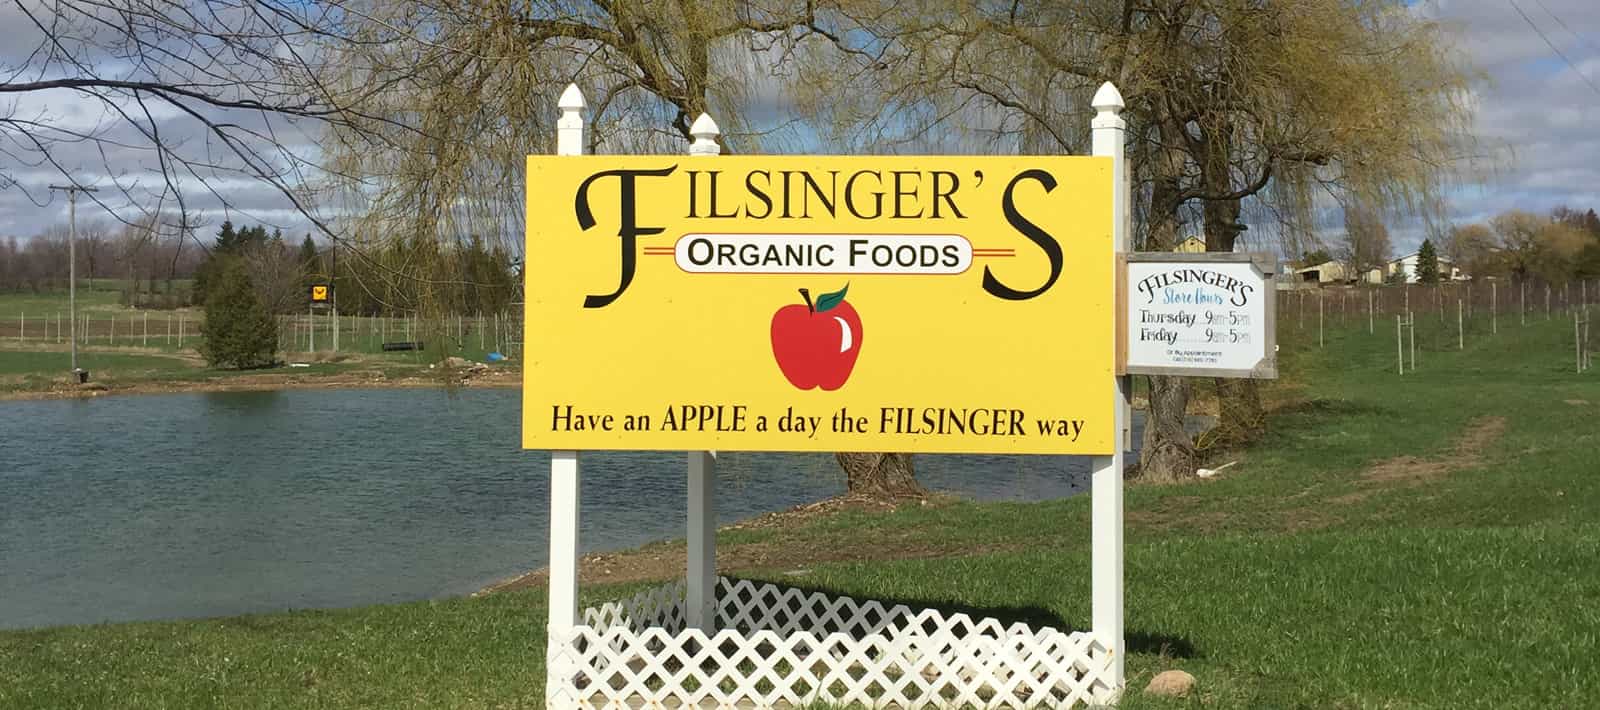 Filsinger's Farm